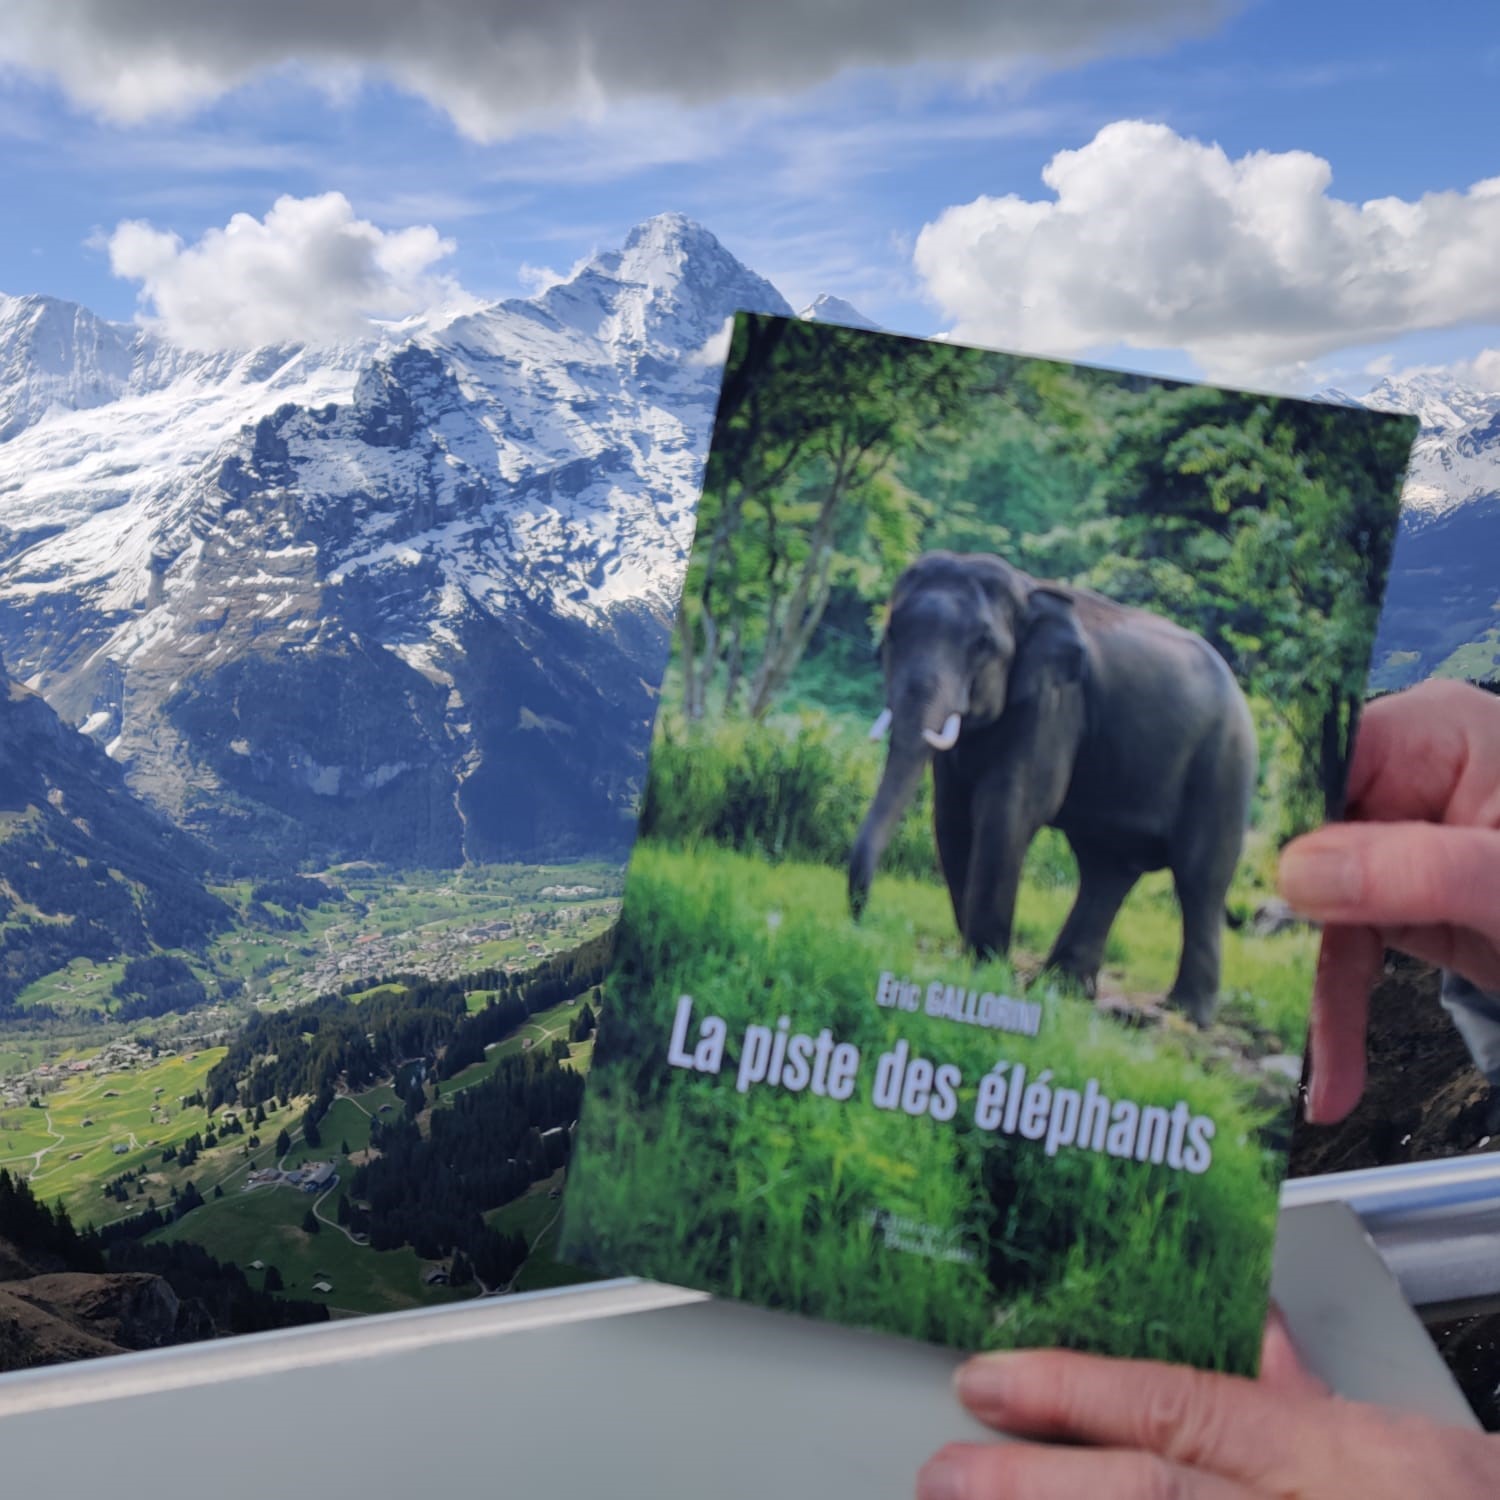 Daniele, La piste des éléphants dans les Alpes Suisses...